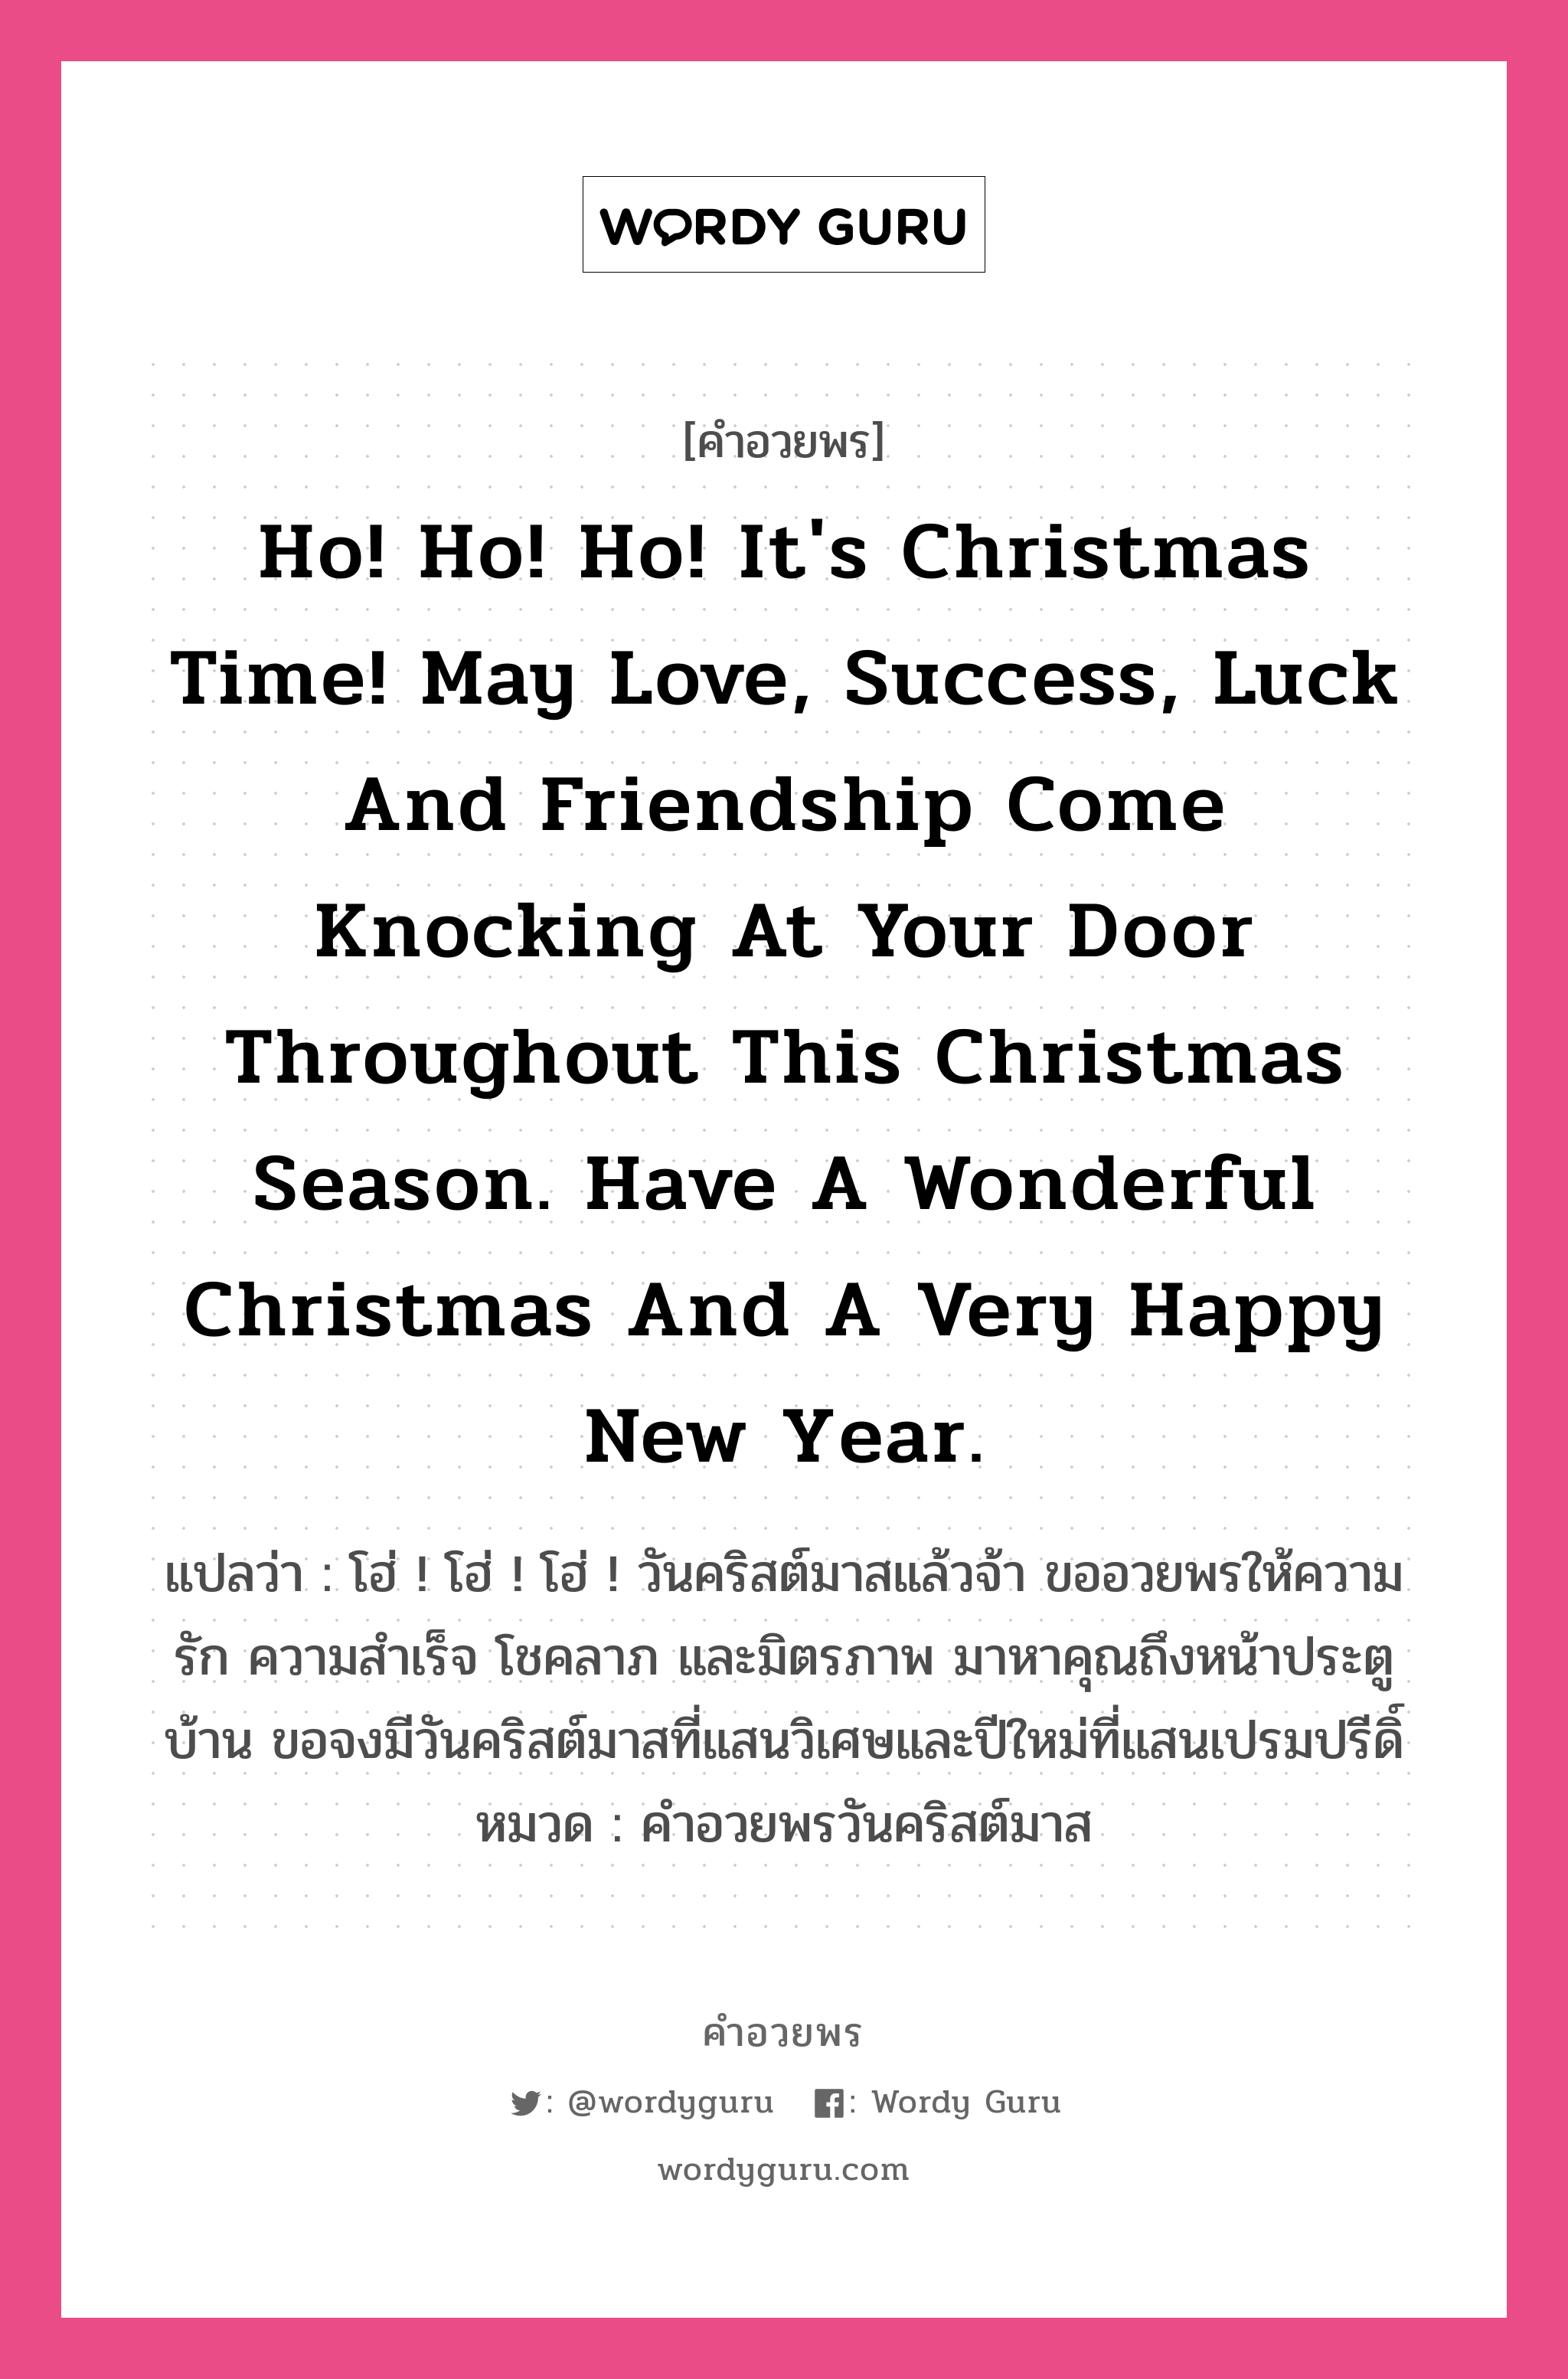 คำอวยพร Ho! Ho! Ho! It's Christmas time! May love, success, luck and friendship come knocking at your door throughout this Christmas season. Have a wonderful Christmas and a very happy New Year. คืออะไร?, แปลว่า โฮ่ ! โฮ่ ! โฮ่ ! วันคริสต์มาสแล้วจ้า ขออวยพรให้ความรัก ความสำเร็จ โชคลาภ และมิตรภาพ มาหาคุณถึงหน้าประตูบ้าน ขอจงมีวันคริสต์มาสที่แสนวิเศษและปีใหม่ที่แสนเปรมปรีดิ์ หมวด คำอวยพรวันคริสต์มาส หมวด คำอวยพรวันคริสต์มาส